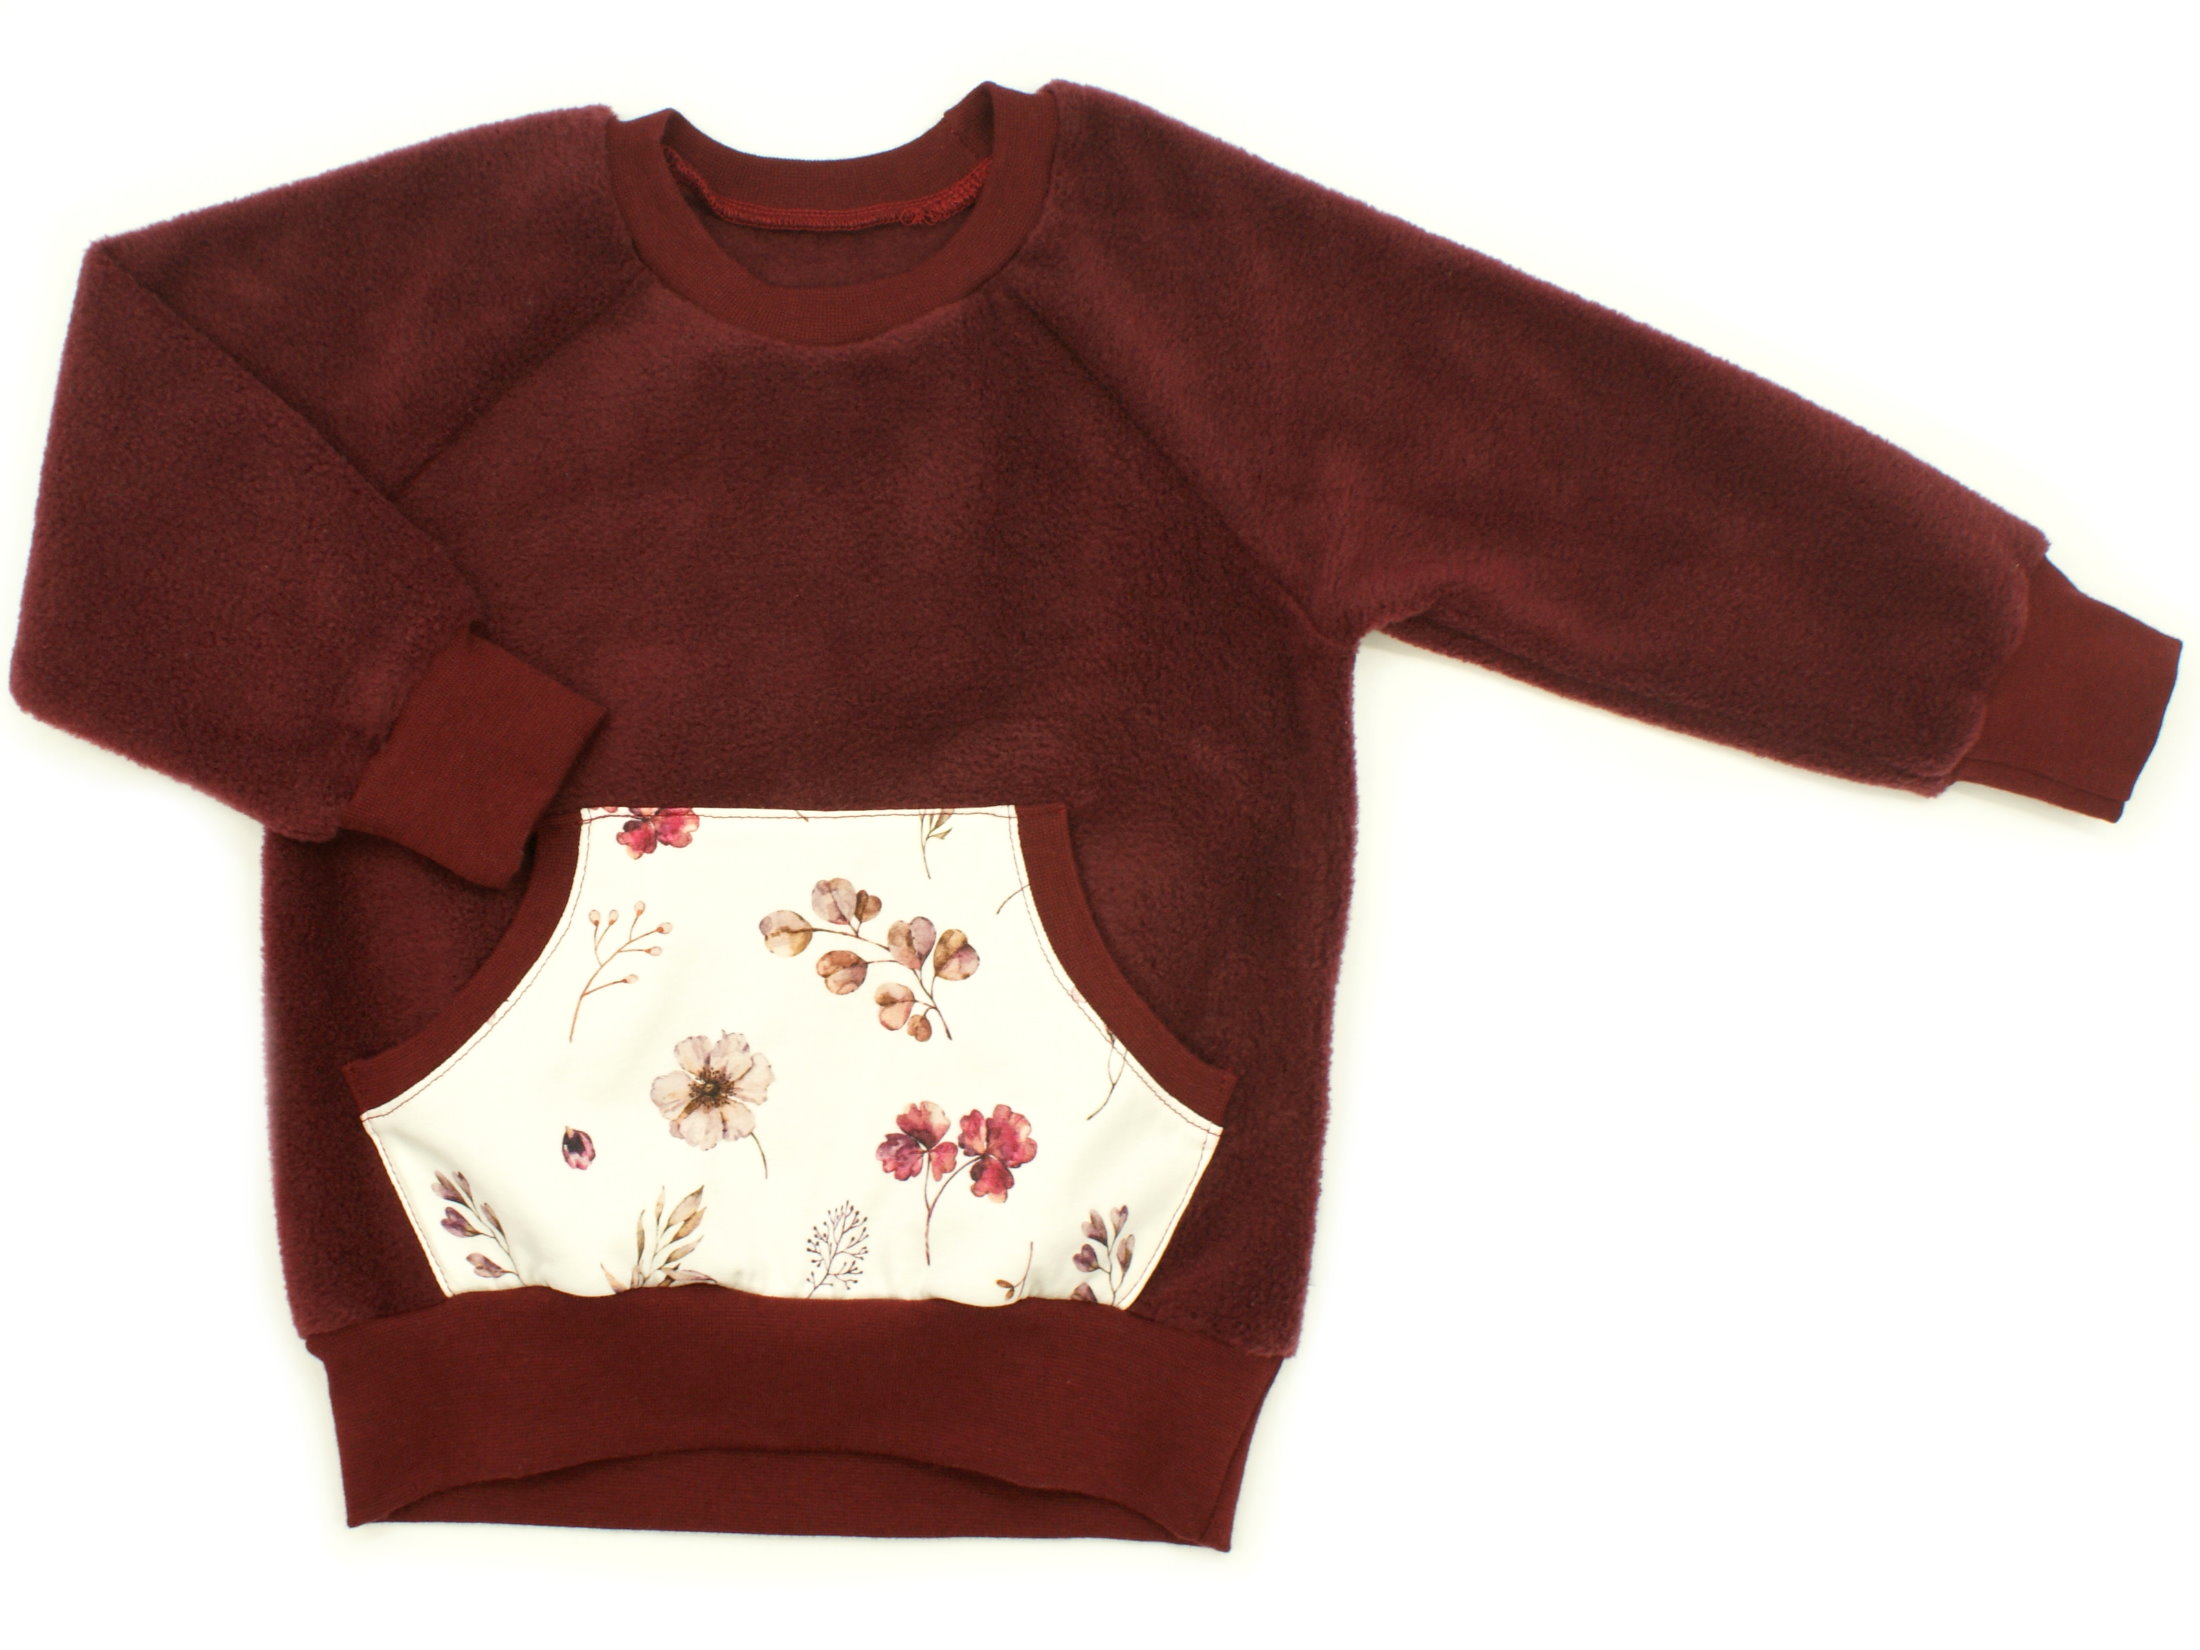 Kinder Fleecepullover mit Tasche "Berry Blossom" weinrot